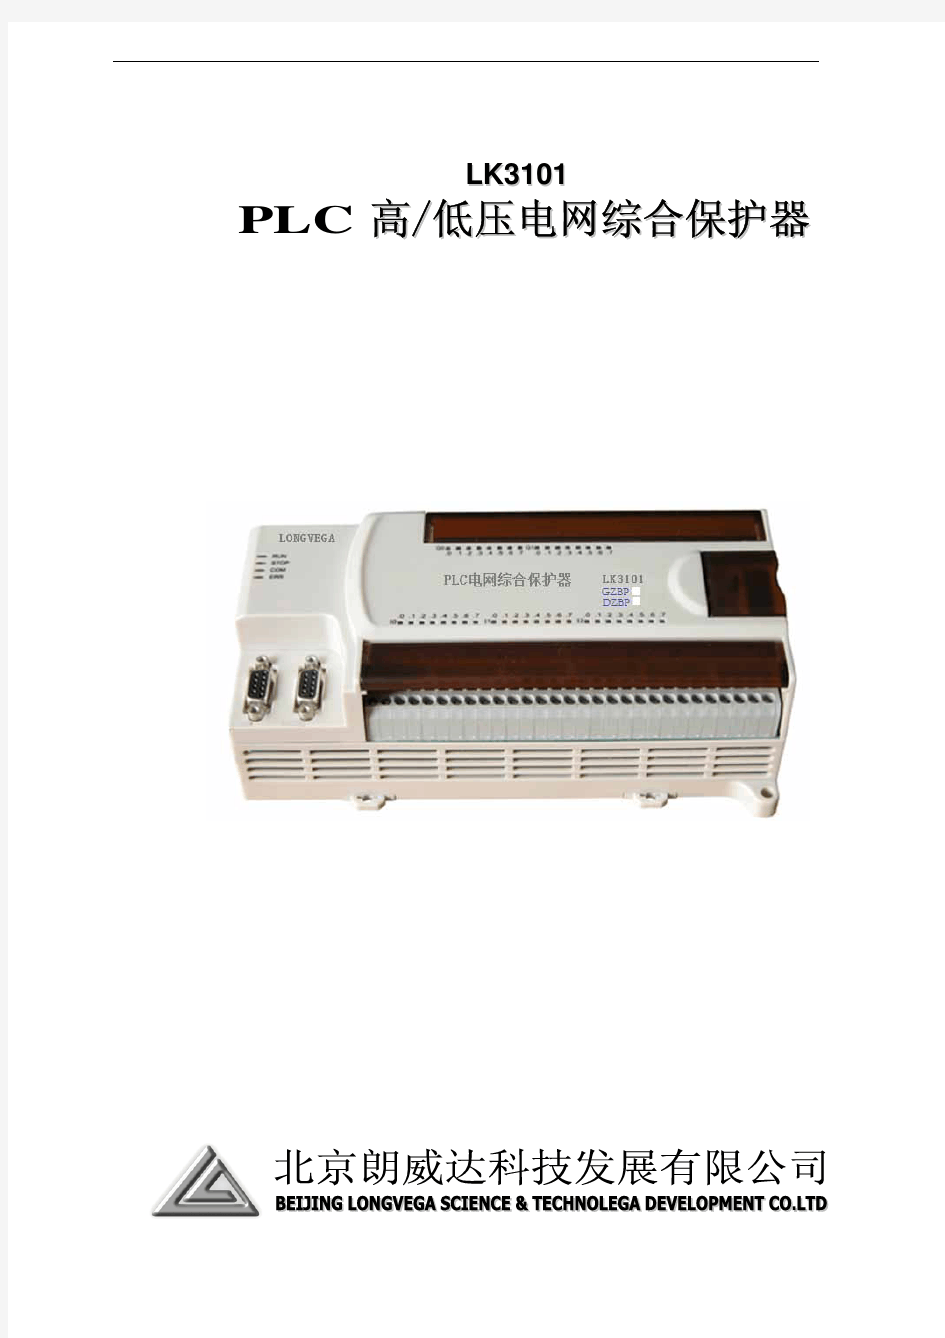 PLC电网综合保护器使用说明